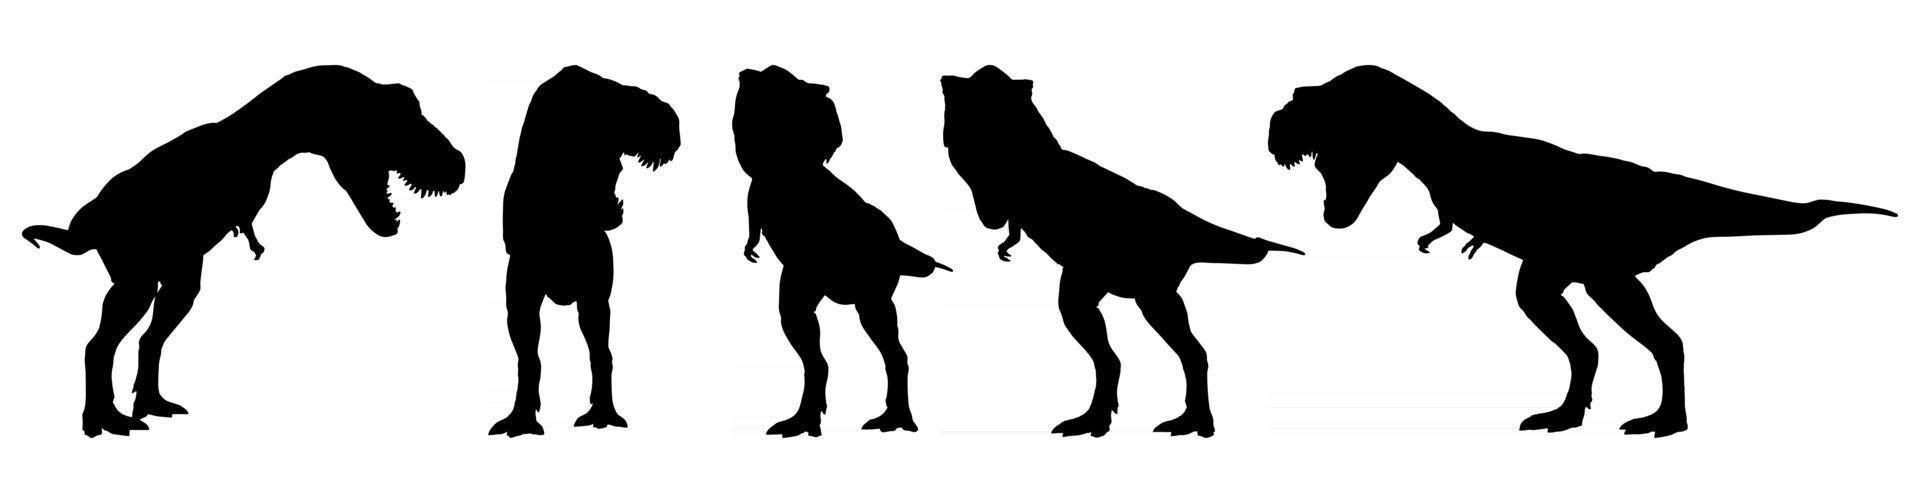 tyrannosaurus rex t-rex går och morrar. silhuett design. uppsättning av olika dinosaurier hållning. vektor .